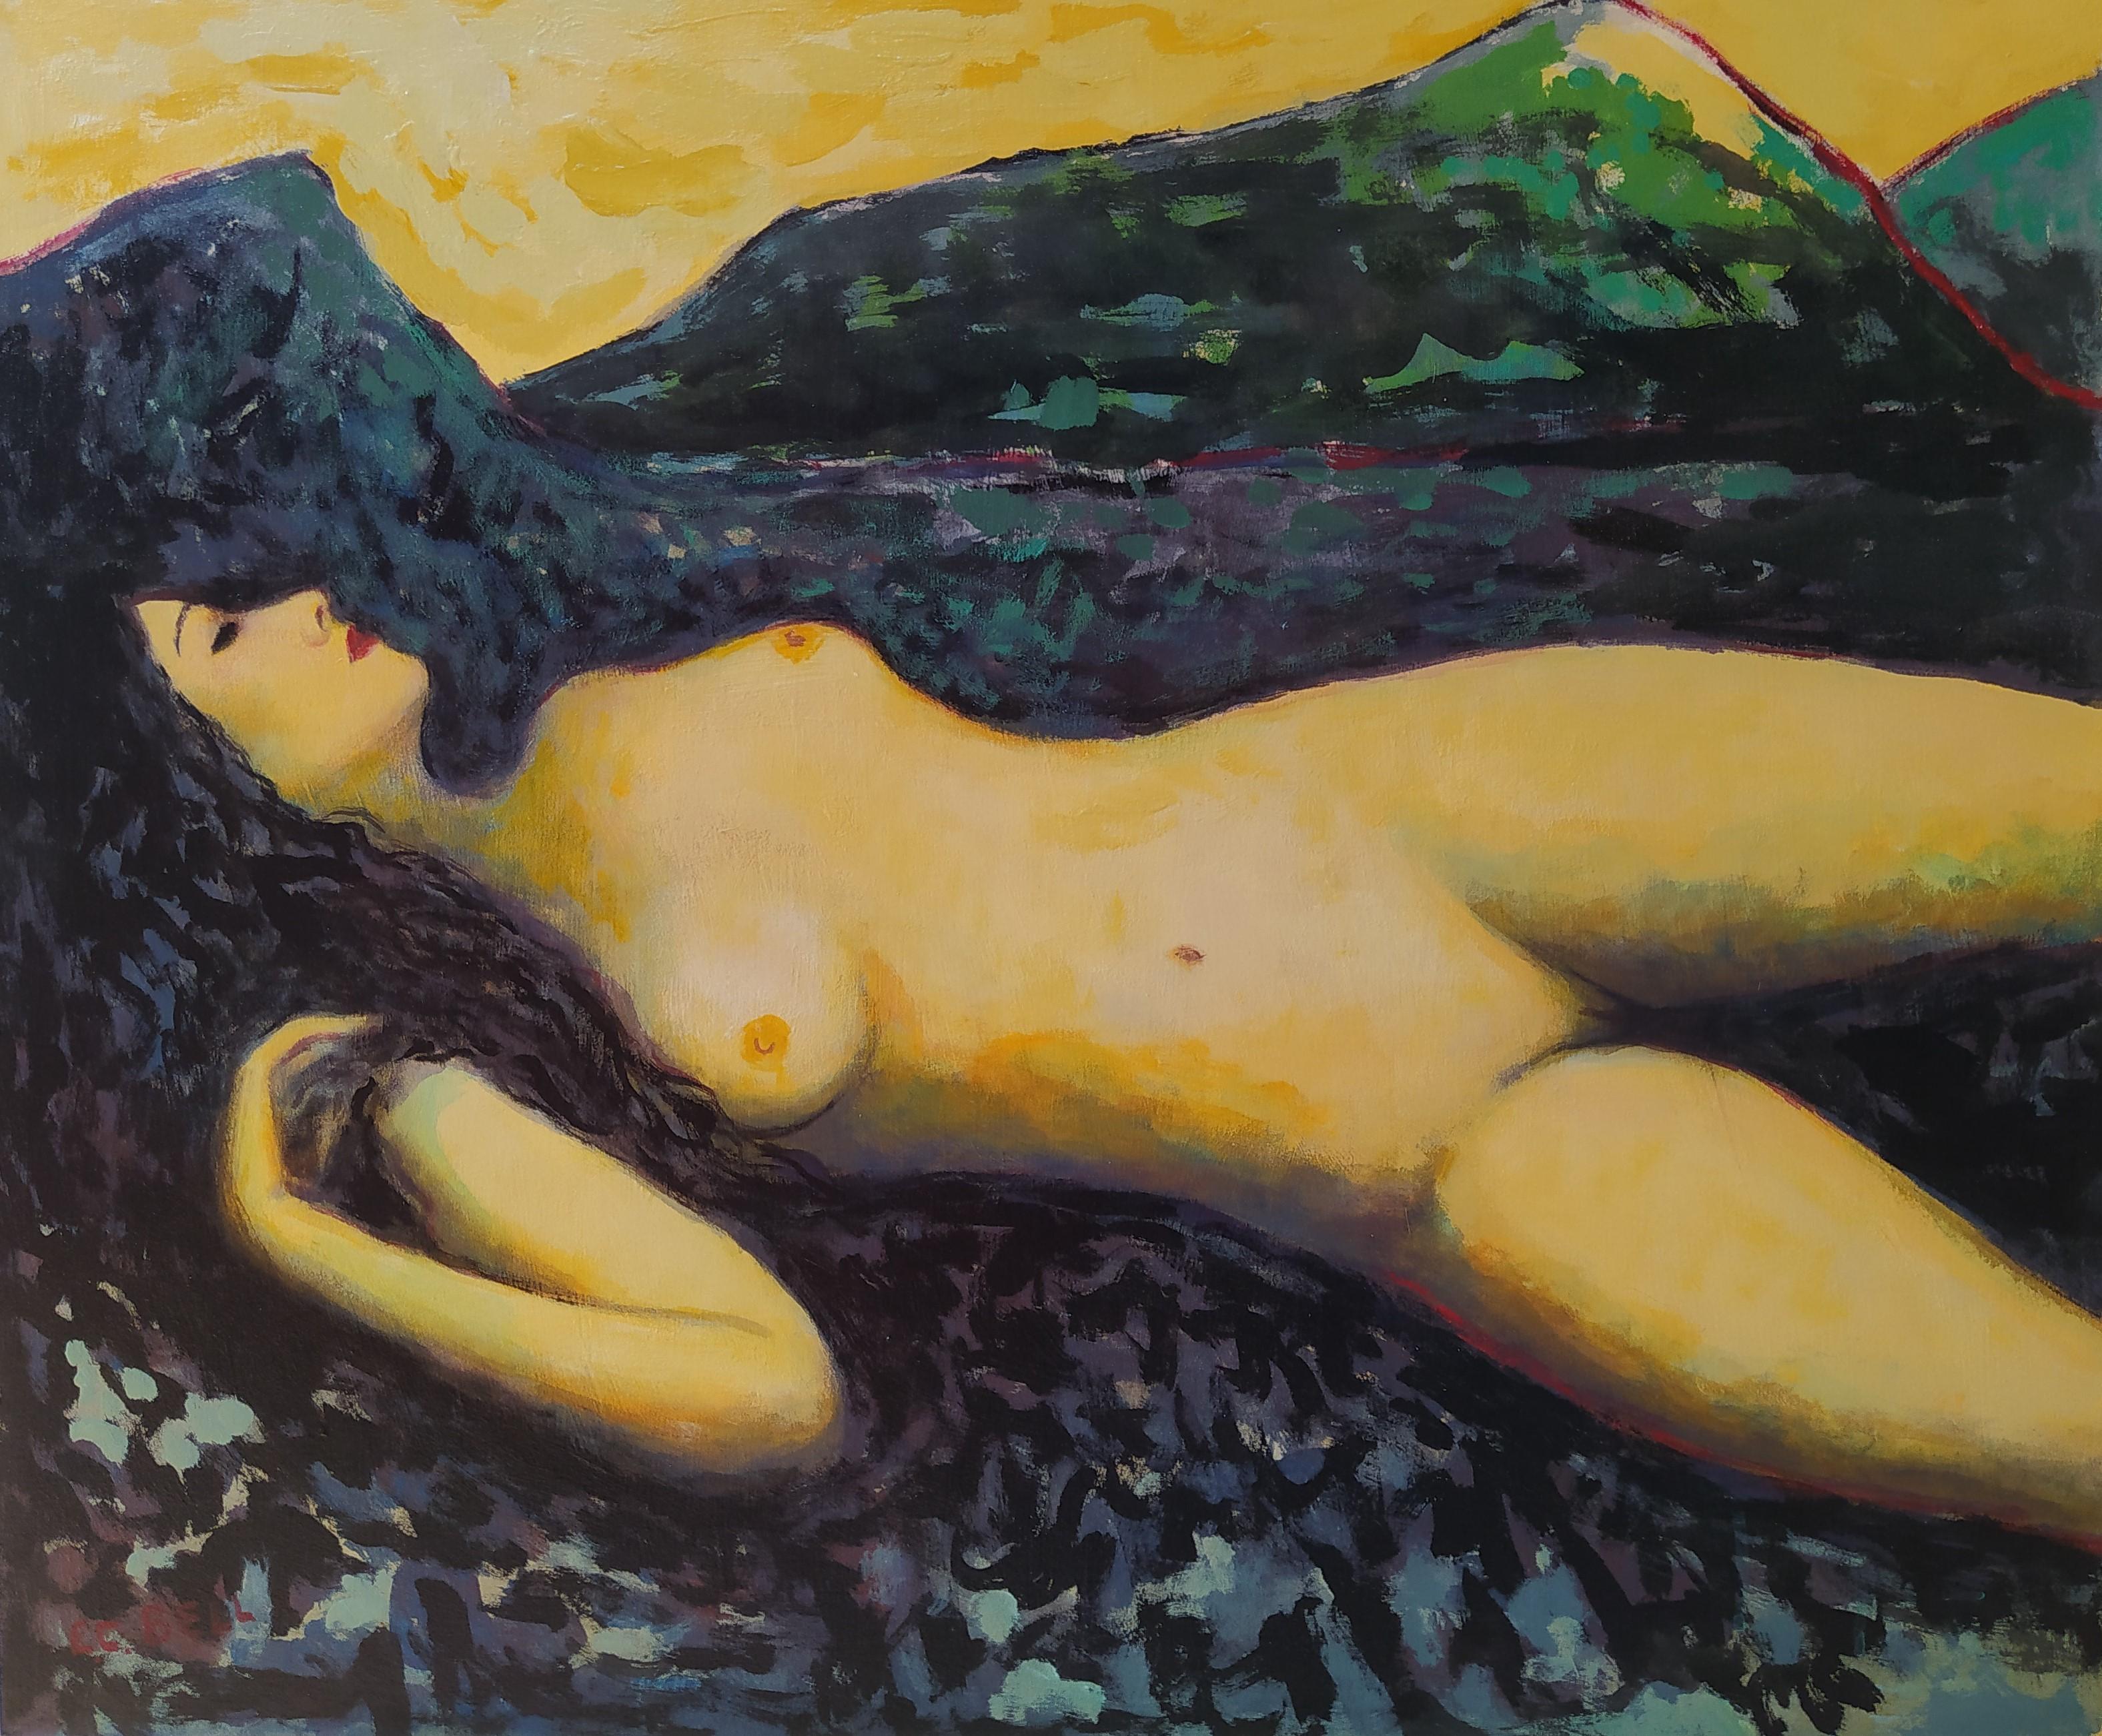 E.C. Bell Figurative Painting – „Flatlander“ – Horizont-expressionistischer weiblicher Akt mit Landschaft im Hintergrund.